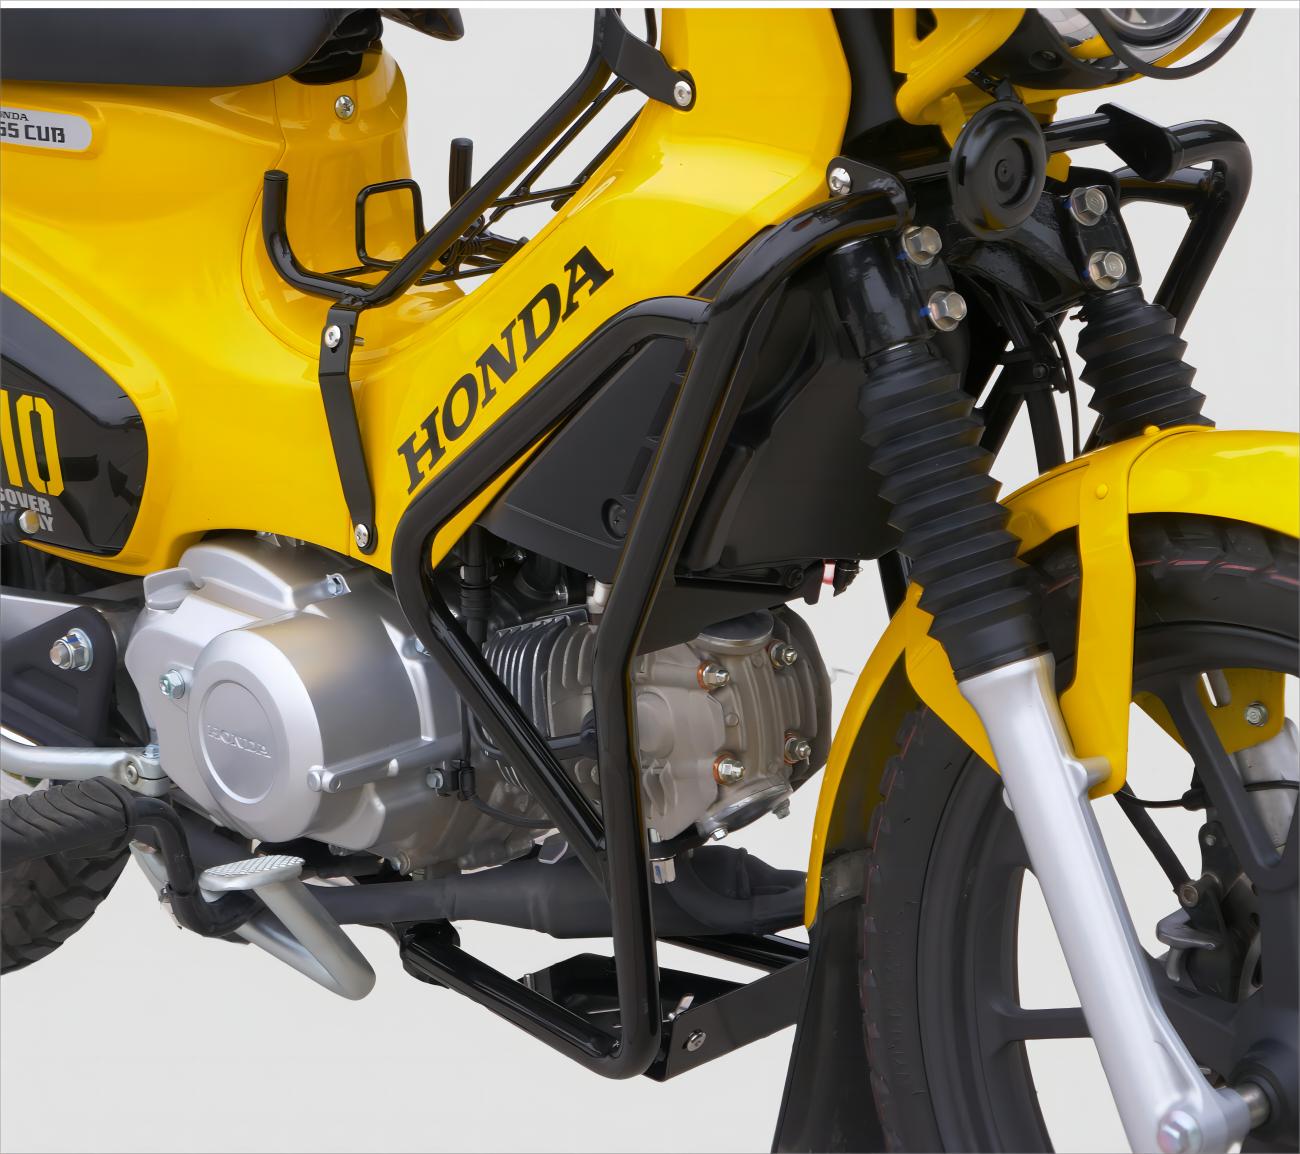 クロスカブ CC110 アンダーフレームキット エンジンガードキット ブラック バイクパーツ カスタムパーツ 改造 オートバイ キャンプツーリング